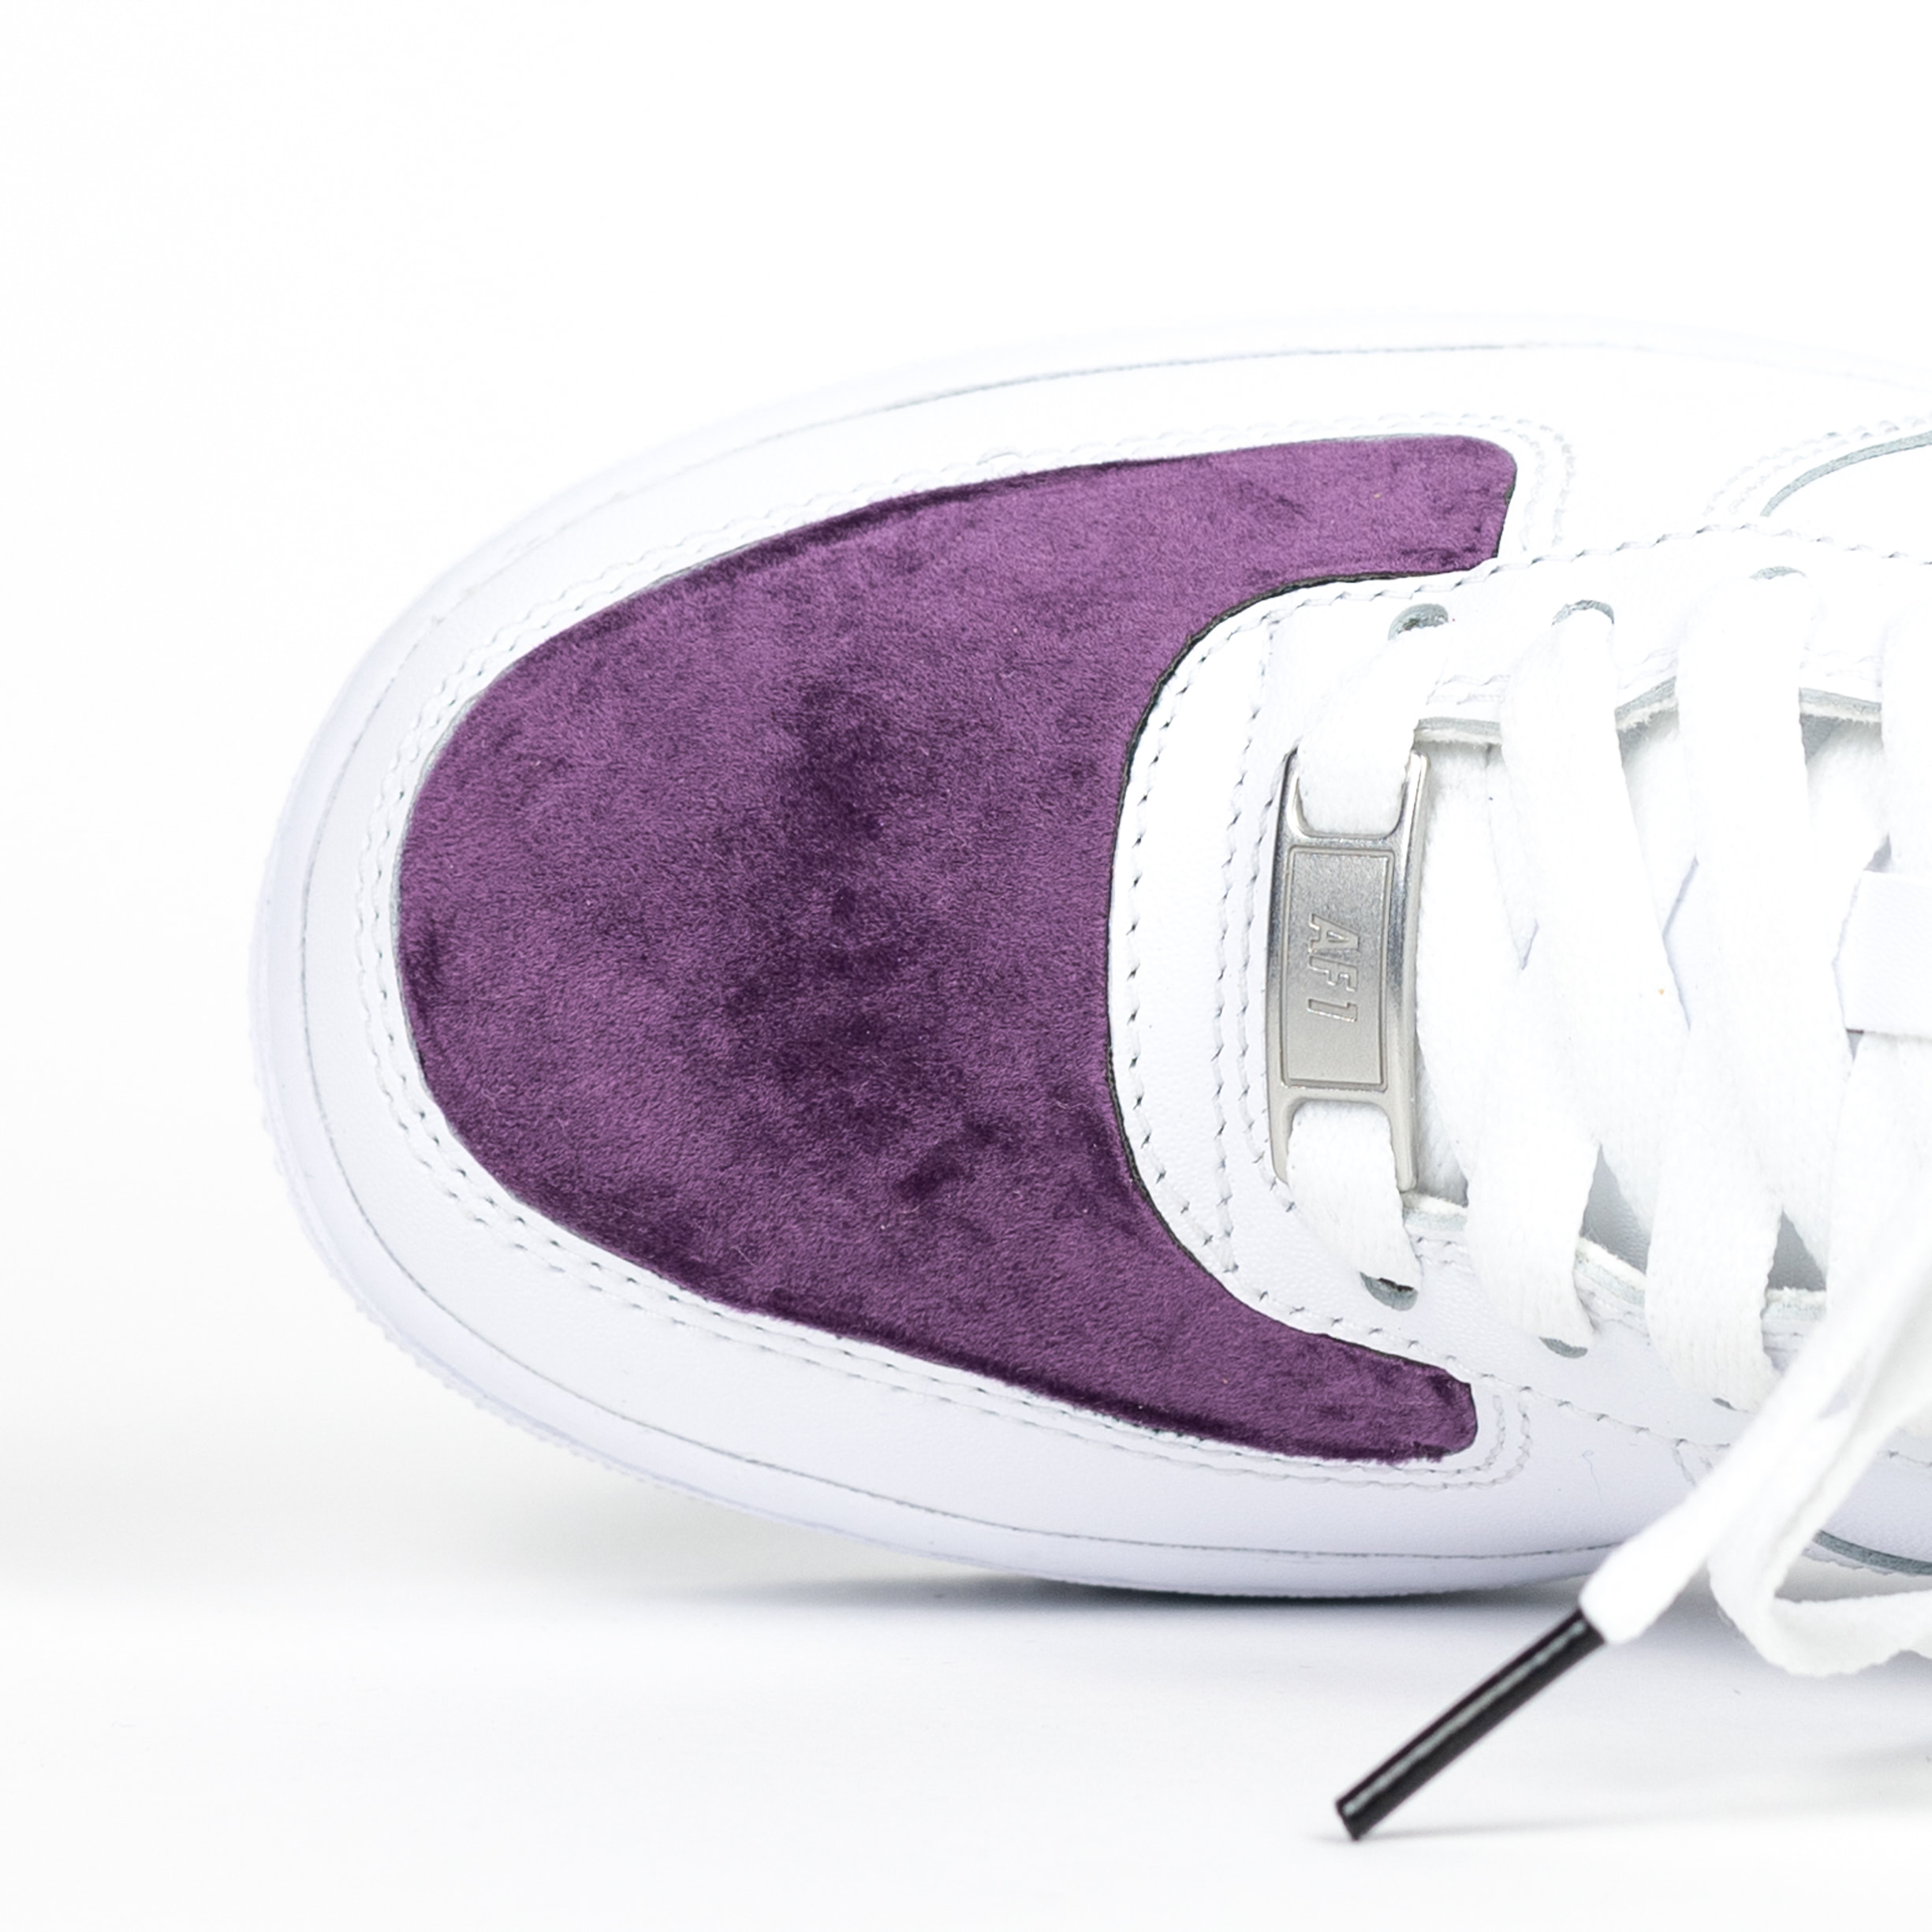 Nike Air Force 1 White Custom 'Purple 